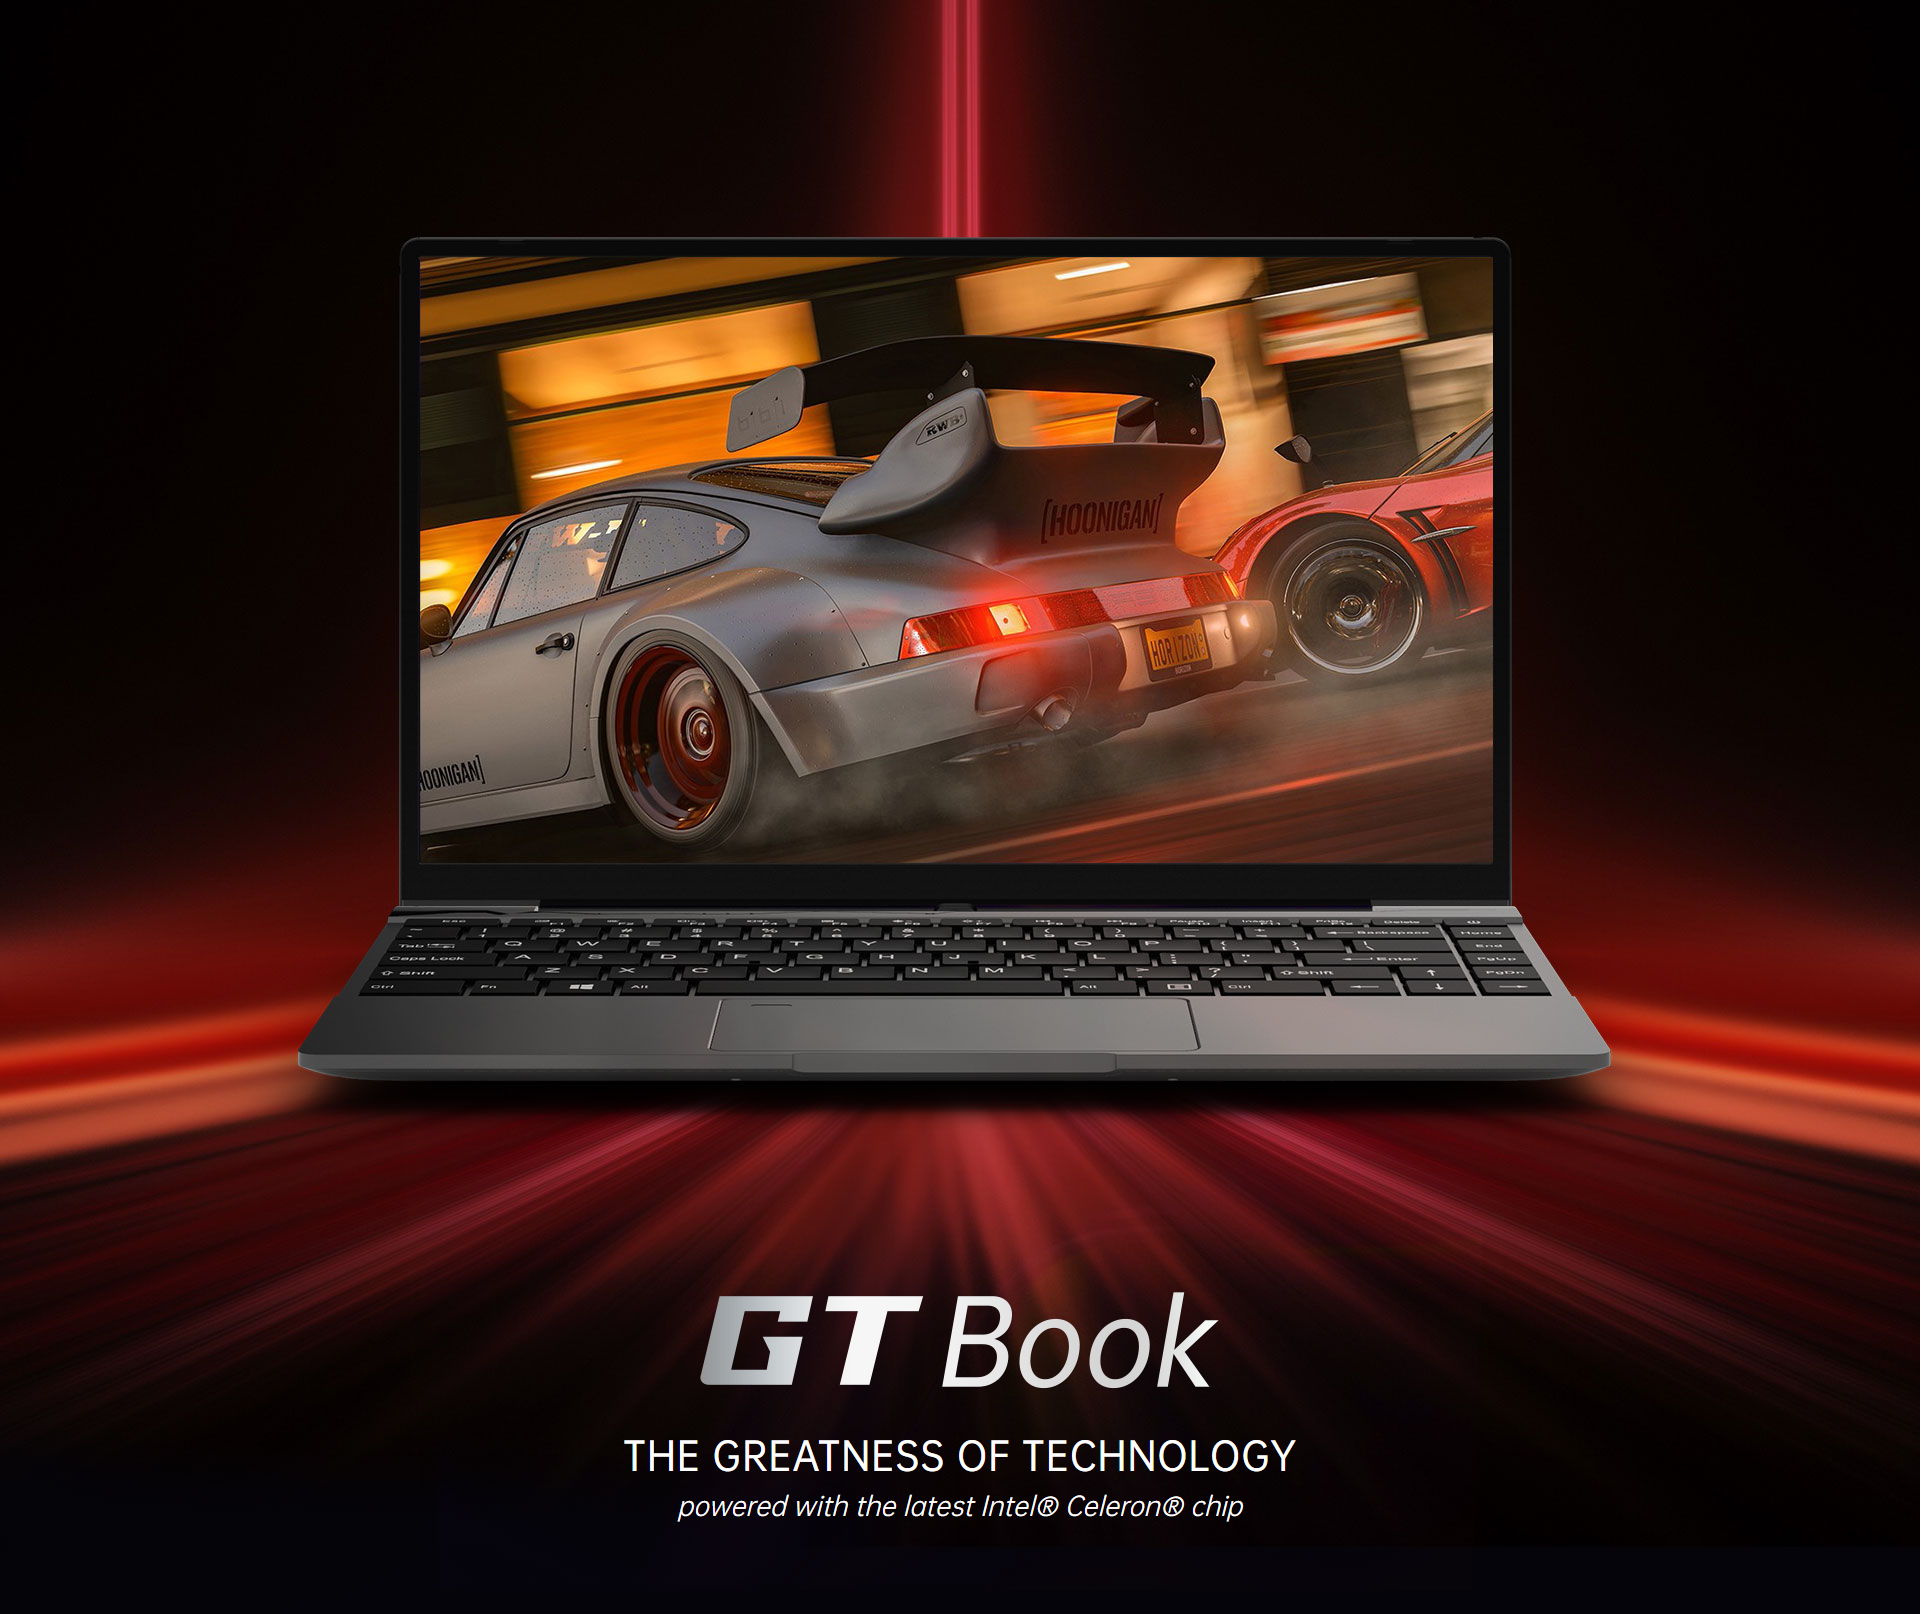 คำอธิบายเพิ่มเติมเกี่ยวกับ Alldocube GT Book 14 inch Intel N5100 Quad Core WiFi6 12GB RAM 256GB SSD 1920×1080 IPS Notebook laptop computer Blth 5.1